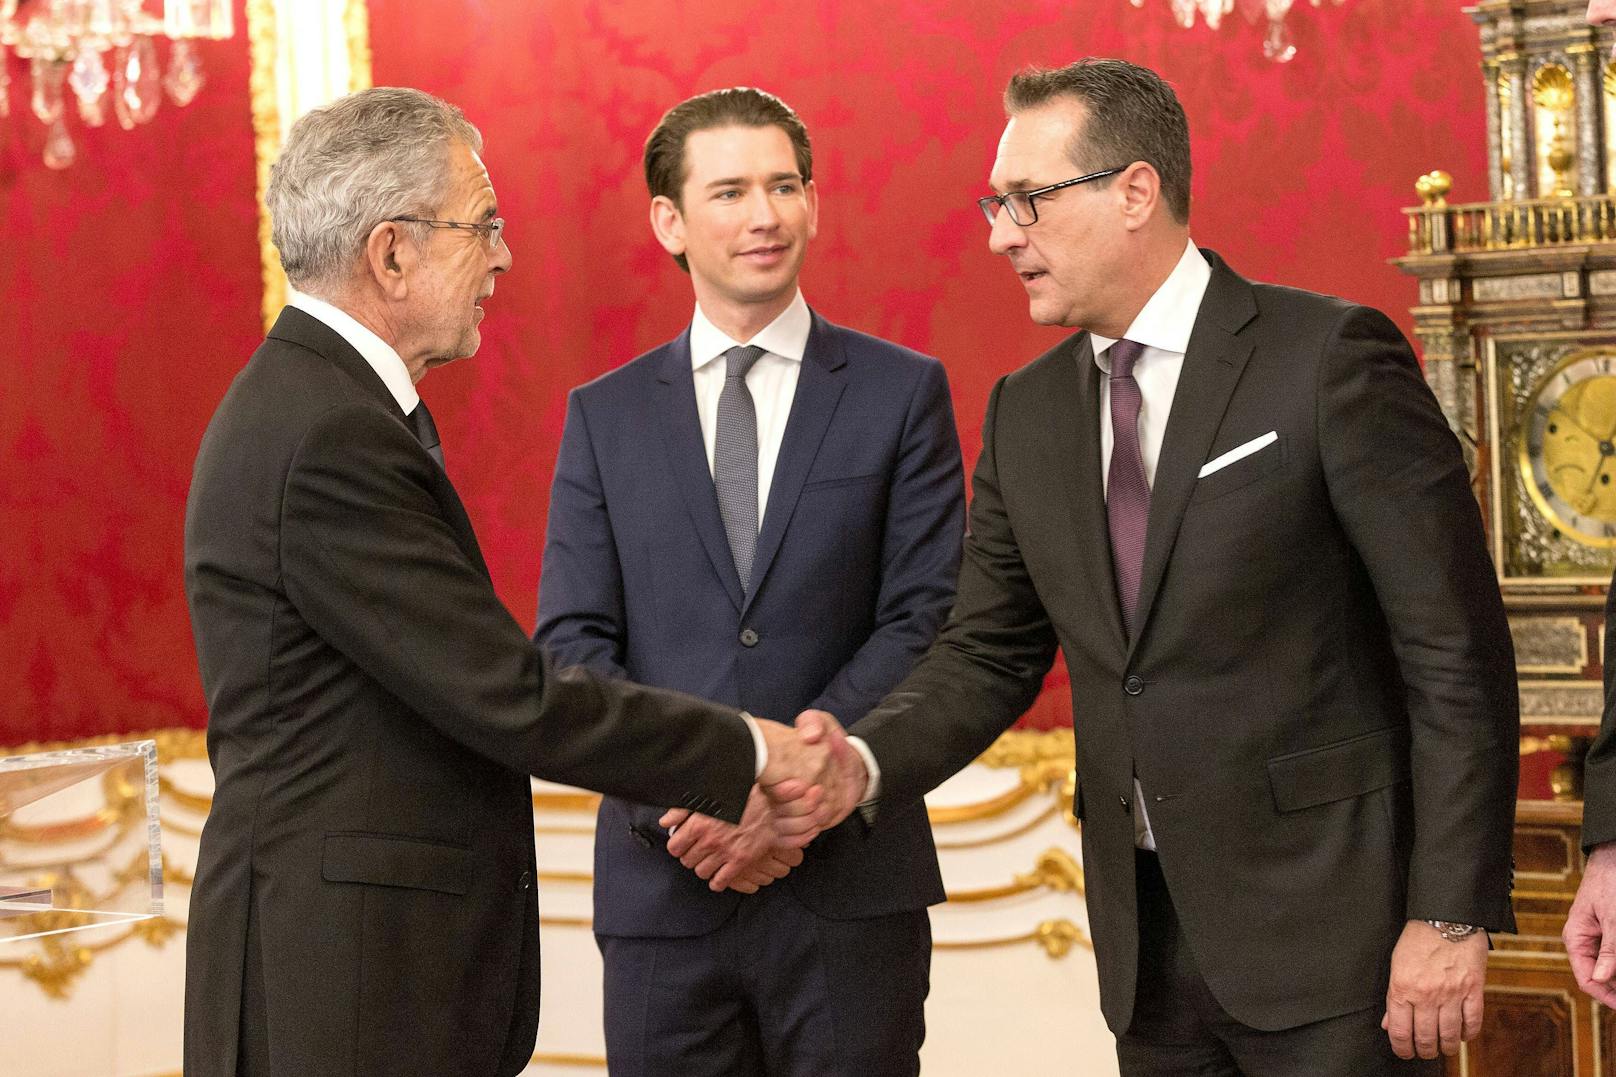 Am 8. Jänner 2018 wurden Sebastian Kurz und der damalige FPÖ-Chef Heinz Christian-Strache von Bundespräsident Alexander van der Bellen als Kanzler und Vizekanzler angelobt.